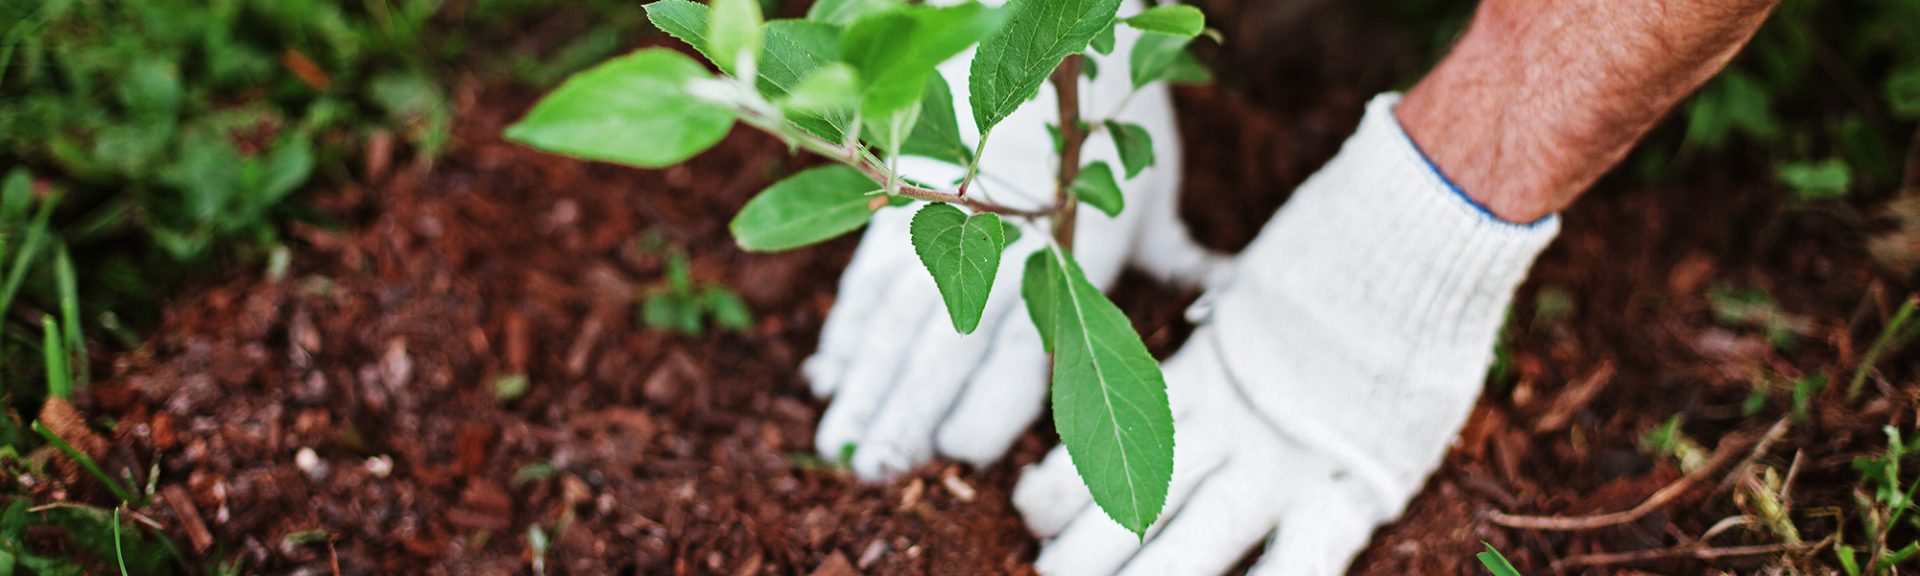 Jardinier avec des gants plante un arbuste